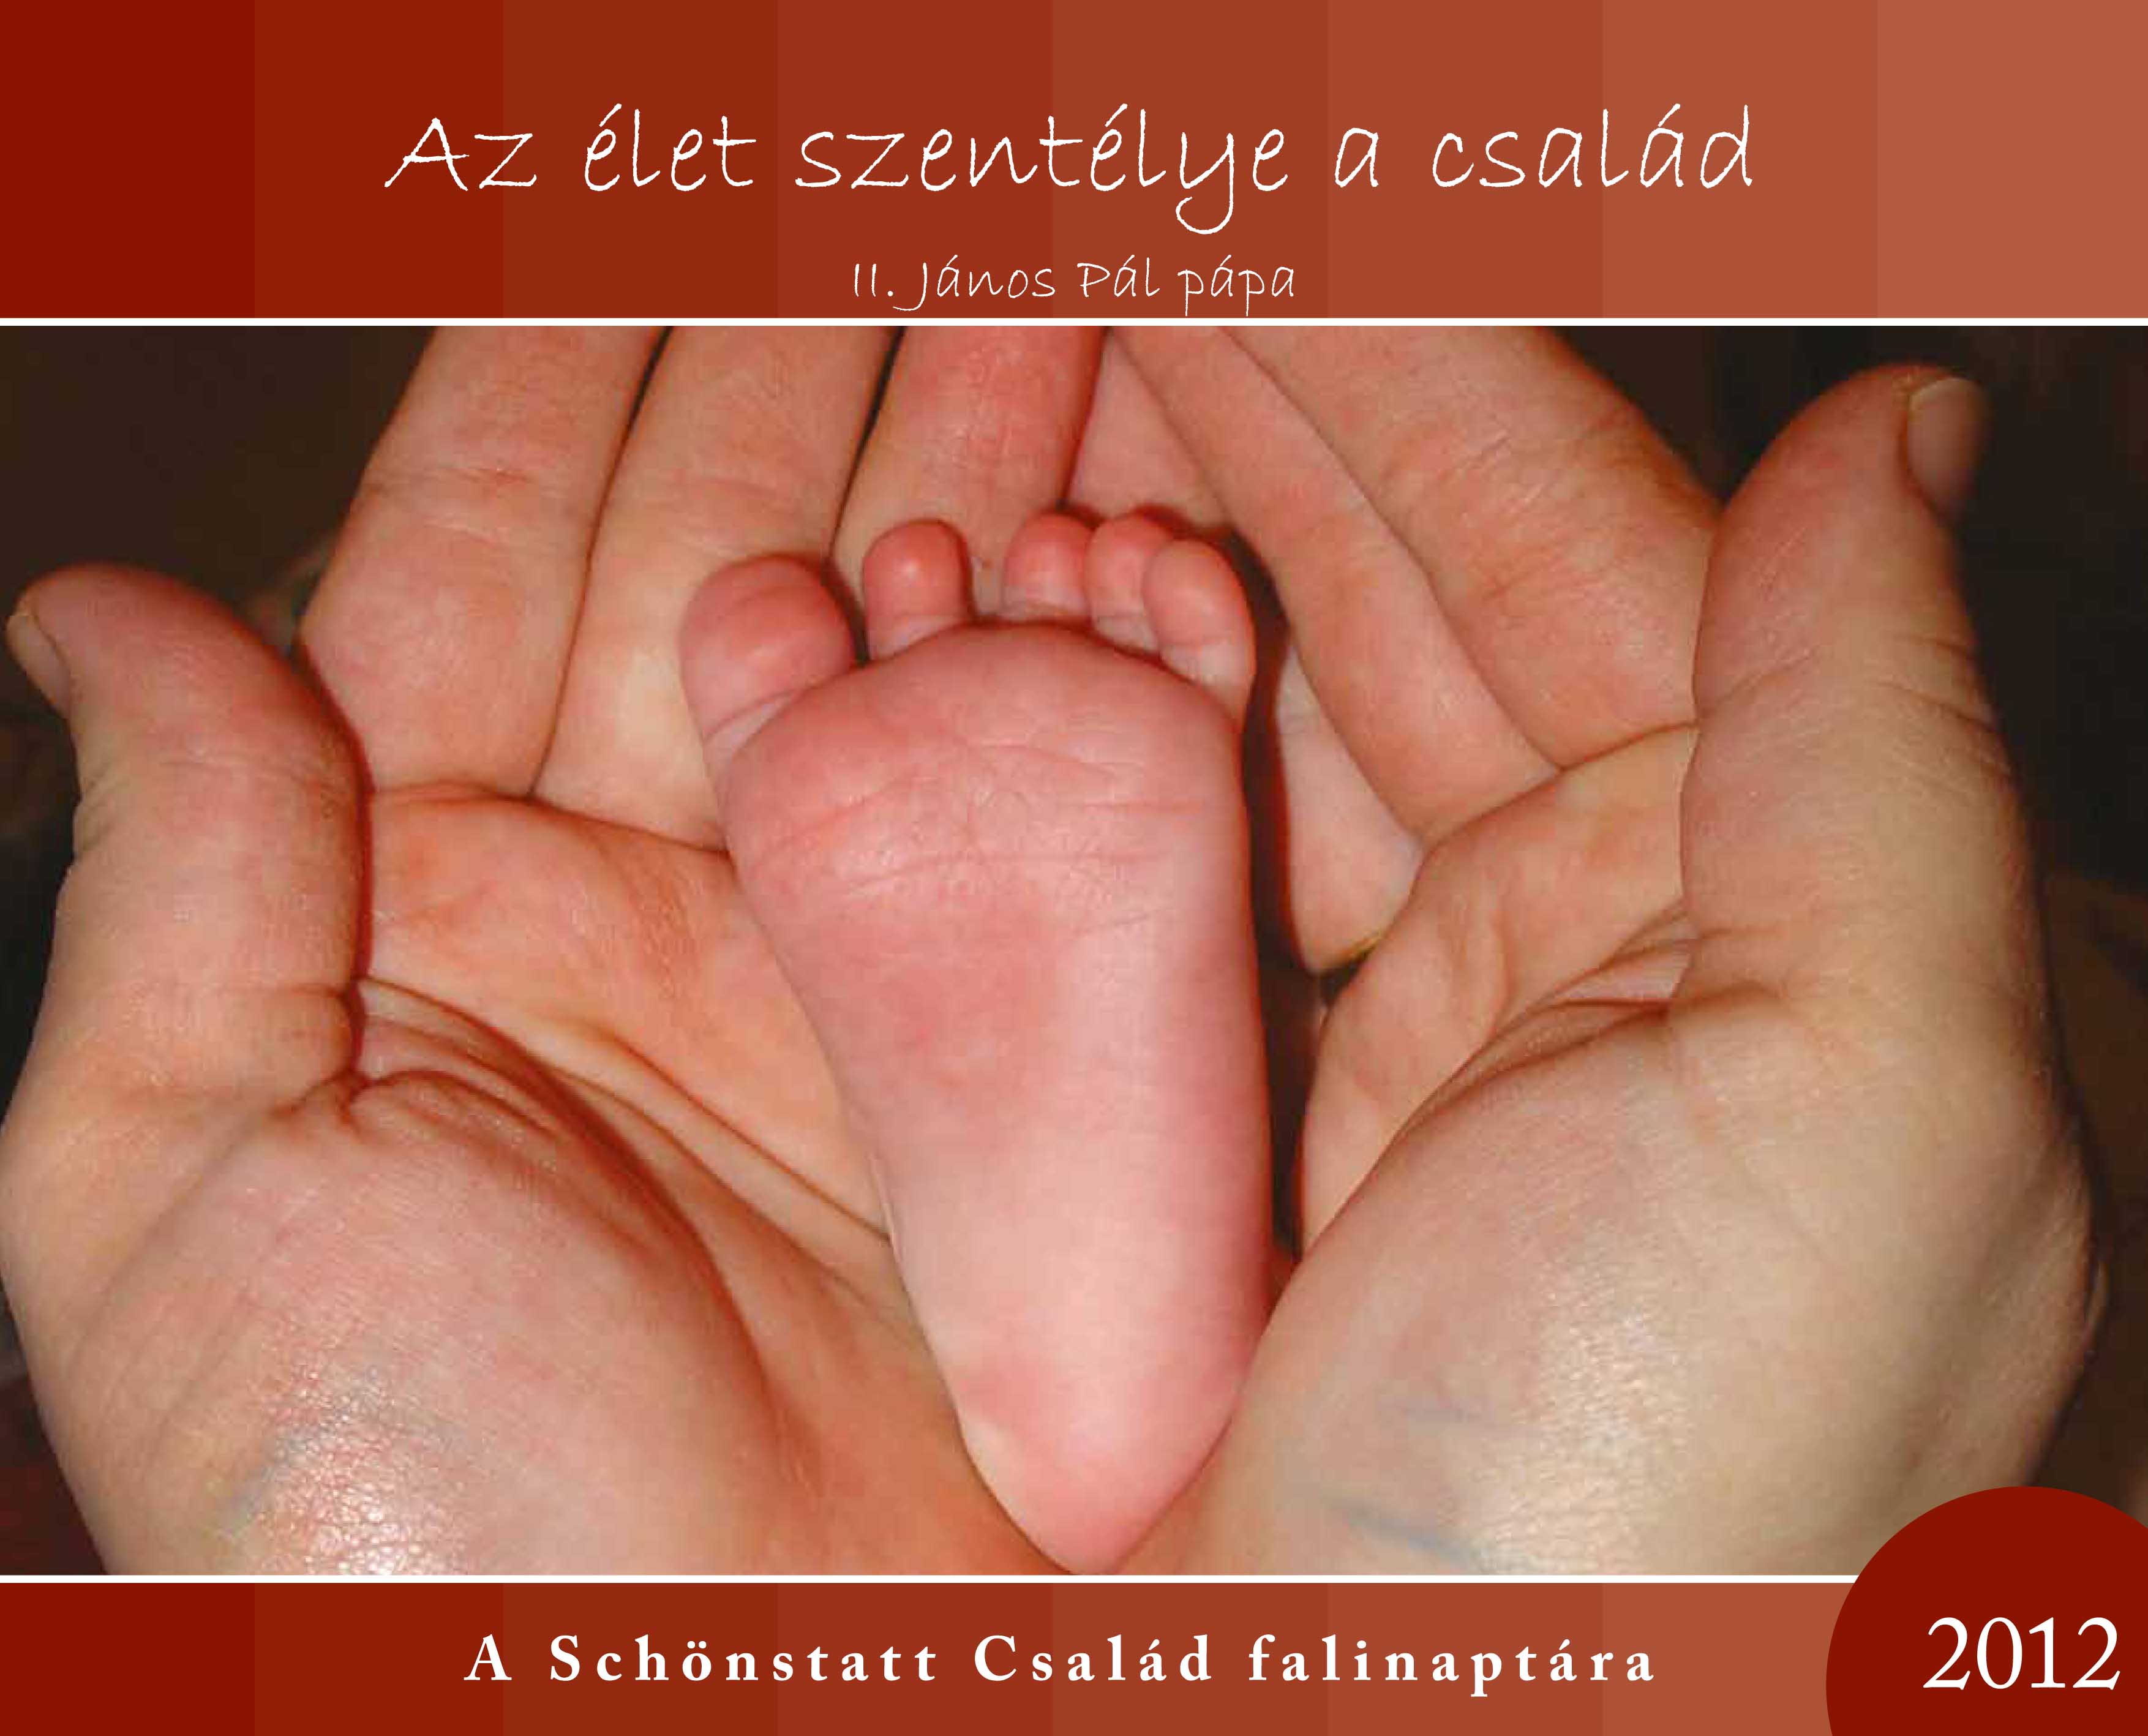 A magyarországi Schönstatt-családmozgalom 2012-es falinaptára